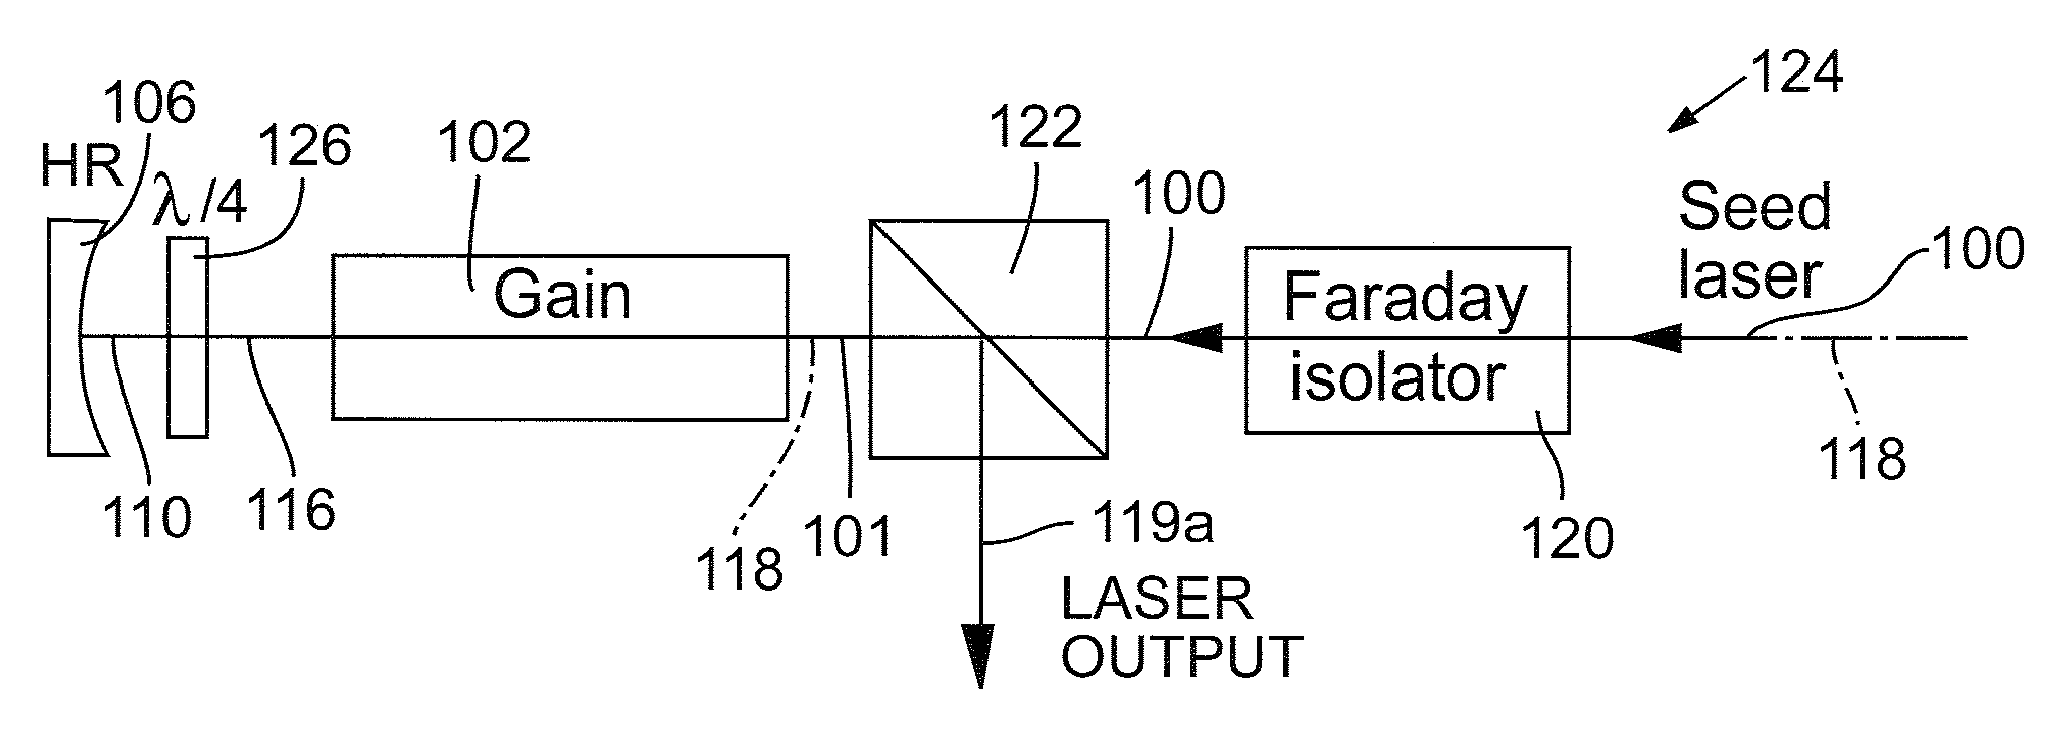 Multi-pass optical power amplifier